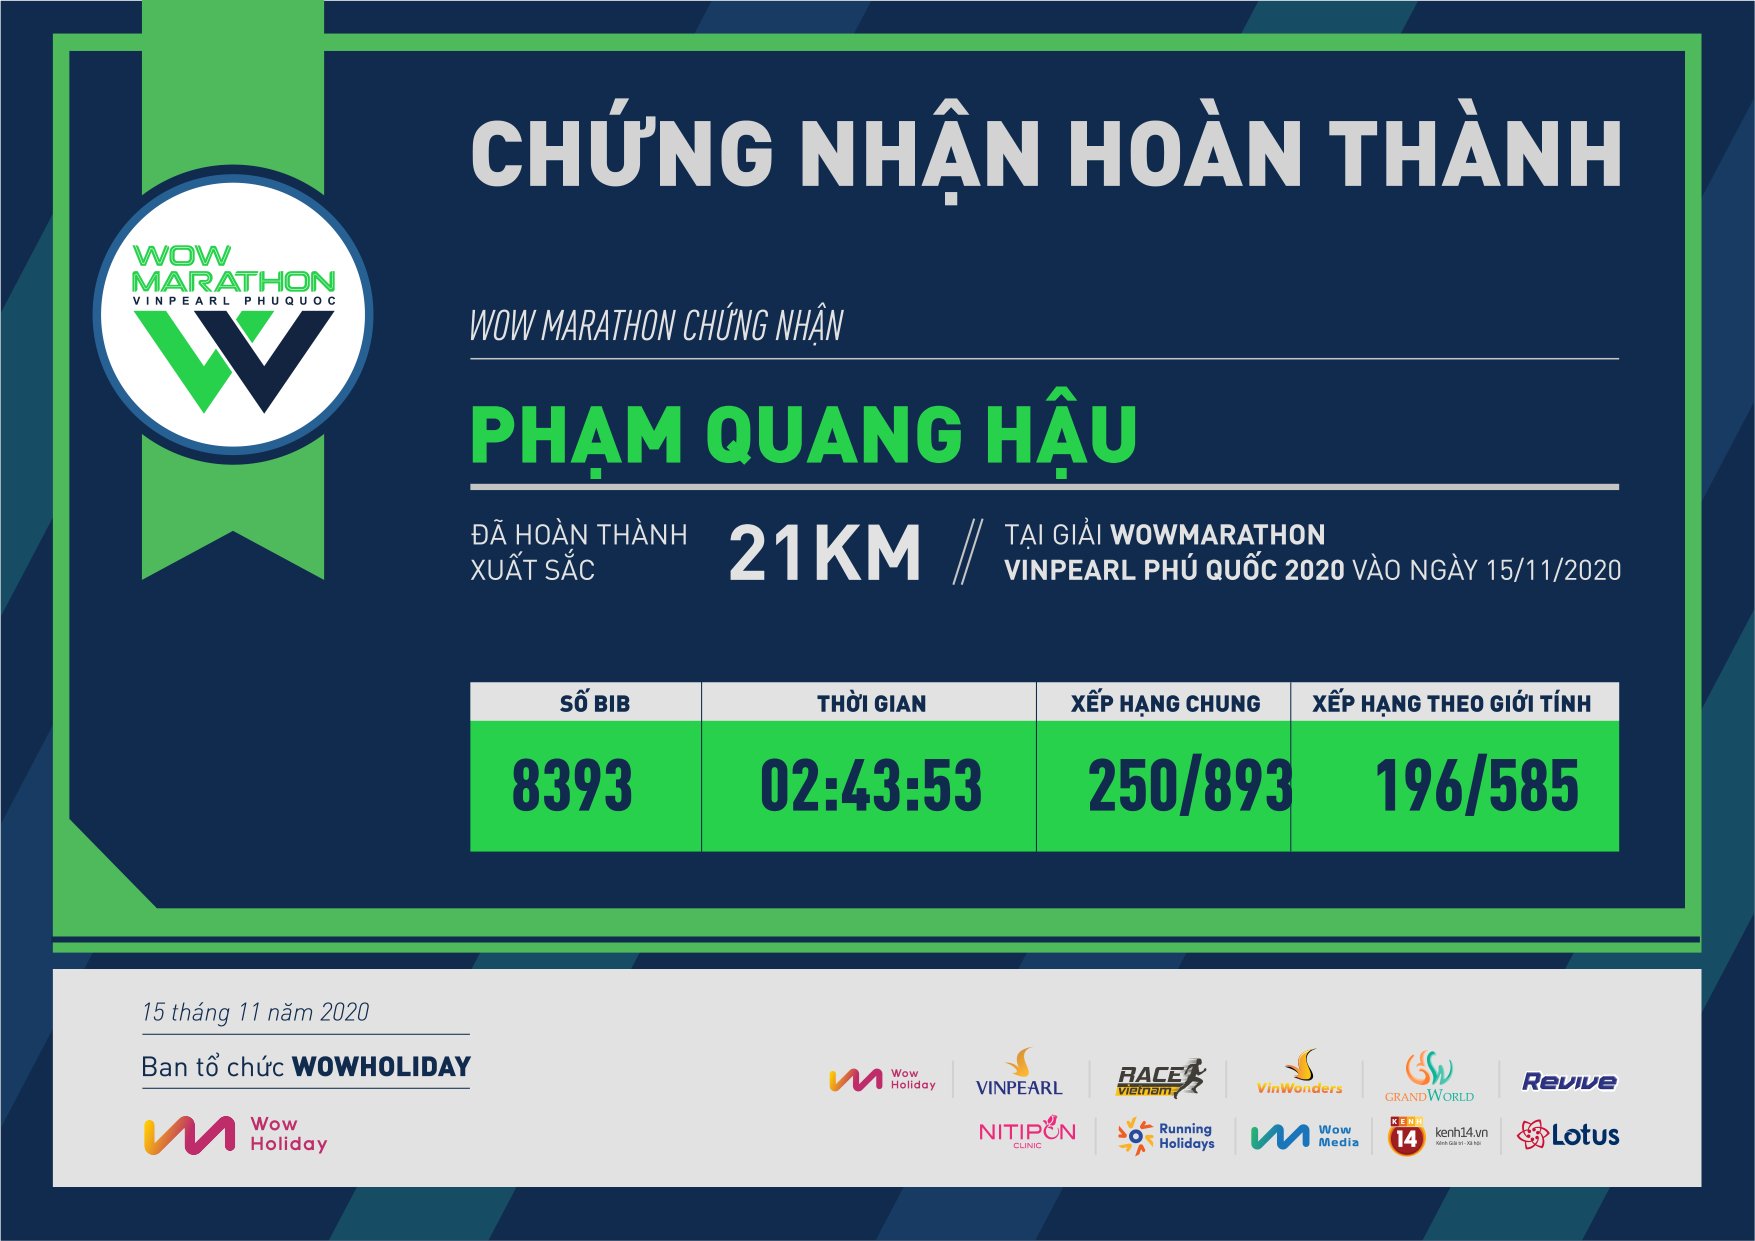 8393 - Phạm Quang Hậu